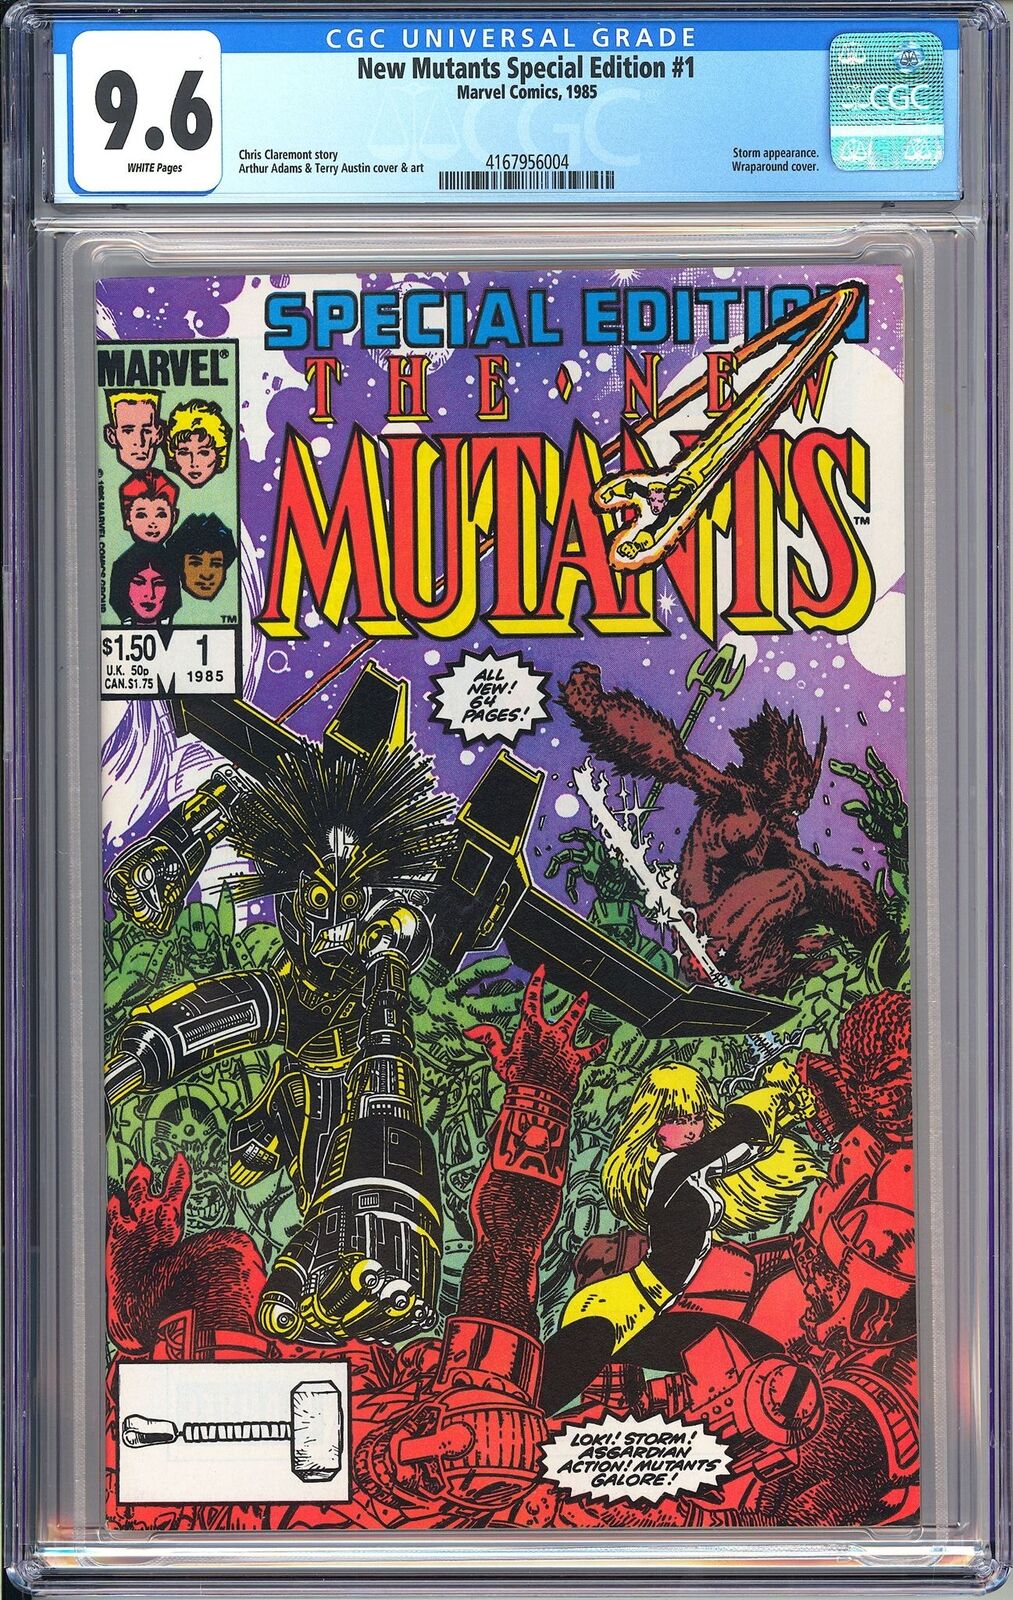 New Mutants 1 Special CGC 9.6 1985 4167956004 Wraparound Edition Key Scarce